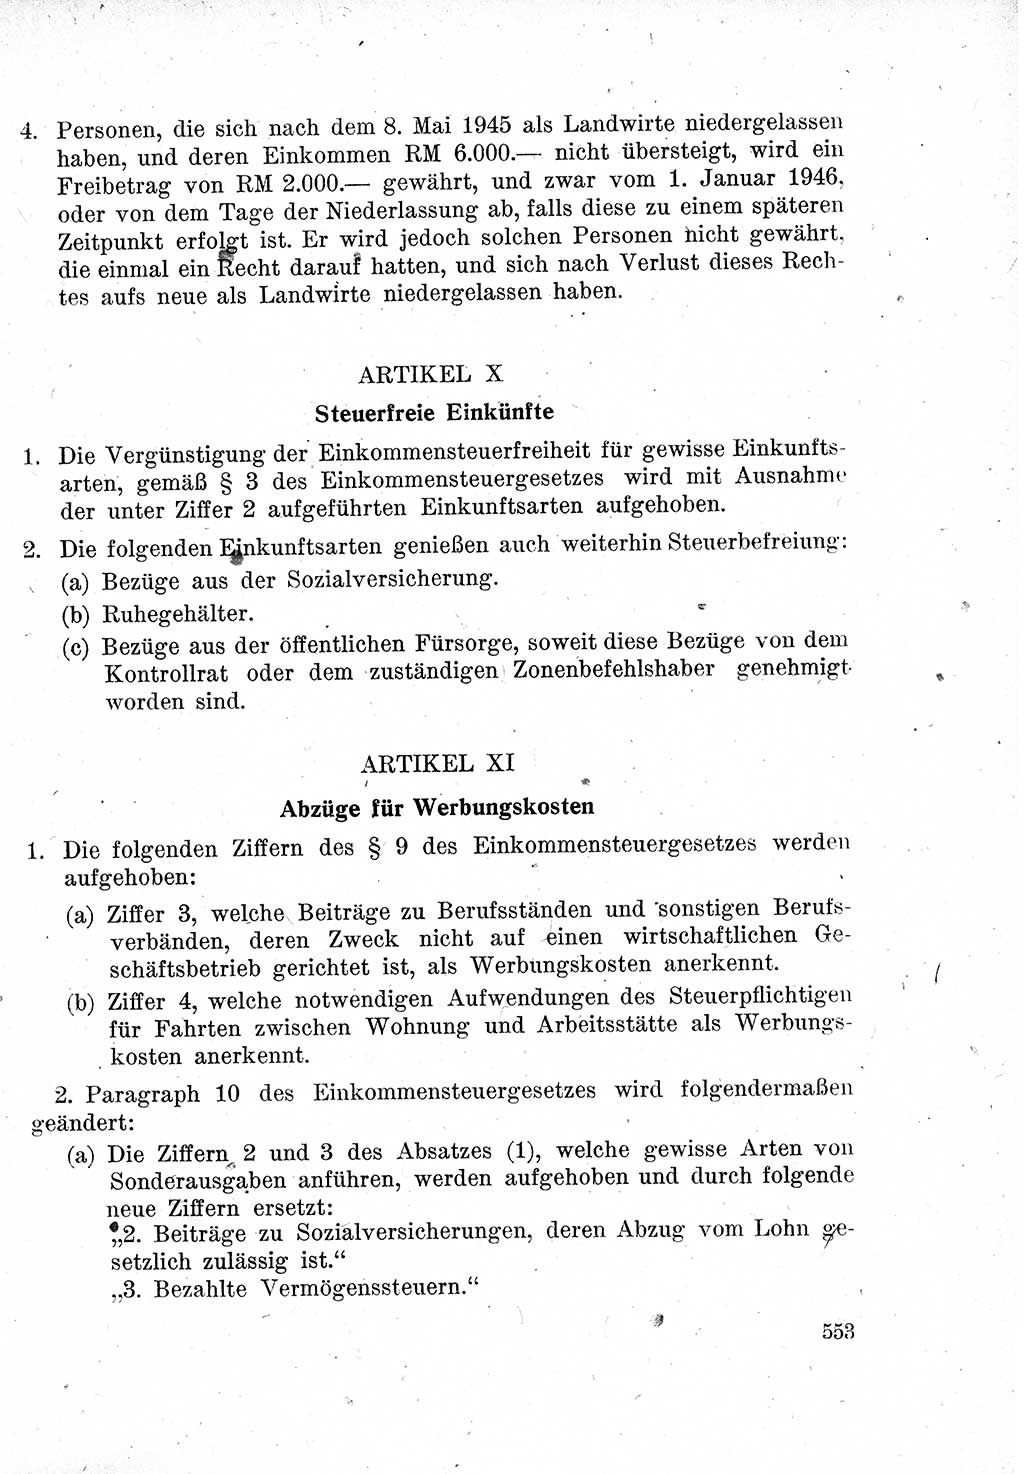 Das Recht der Besatzungsmacht (Deutschland), Proklamationen, Deklerationen, Verordnungen, Gesetze und Bekanntmachungen 1947, Seite 553 (R. Bes. Dtl. 1947, S. 553)